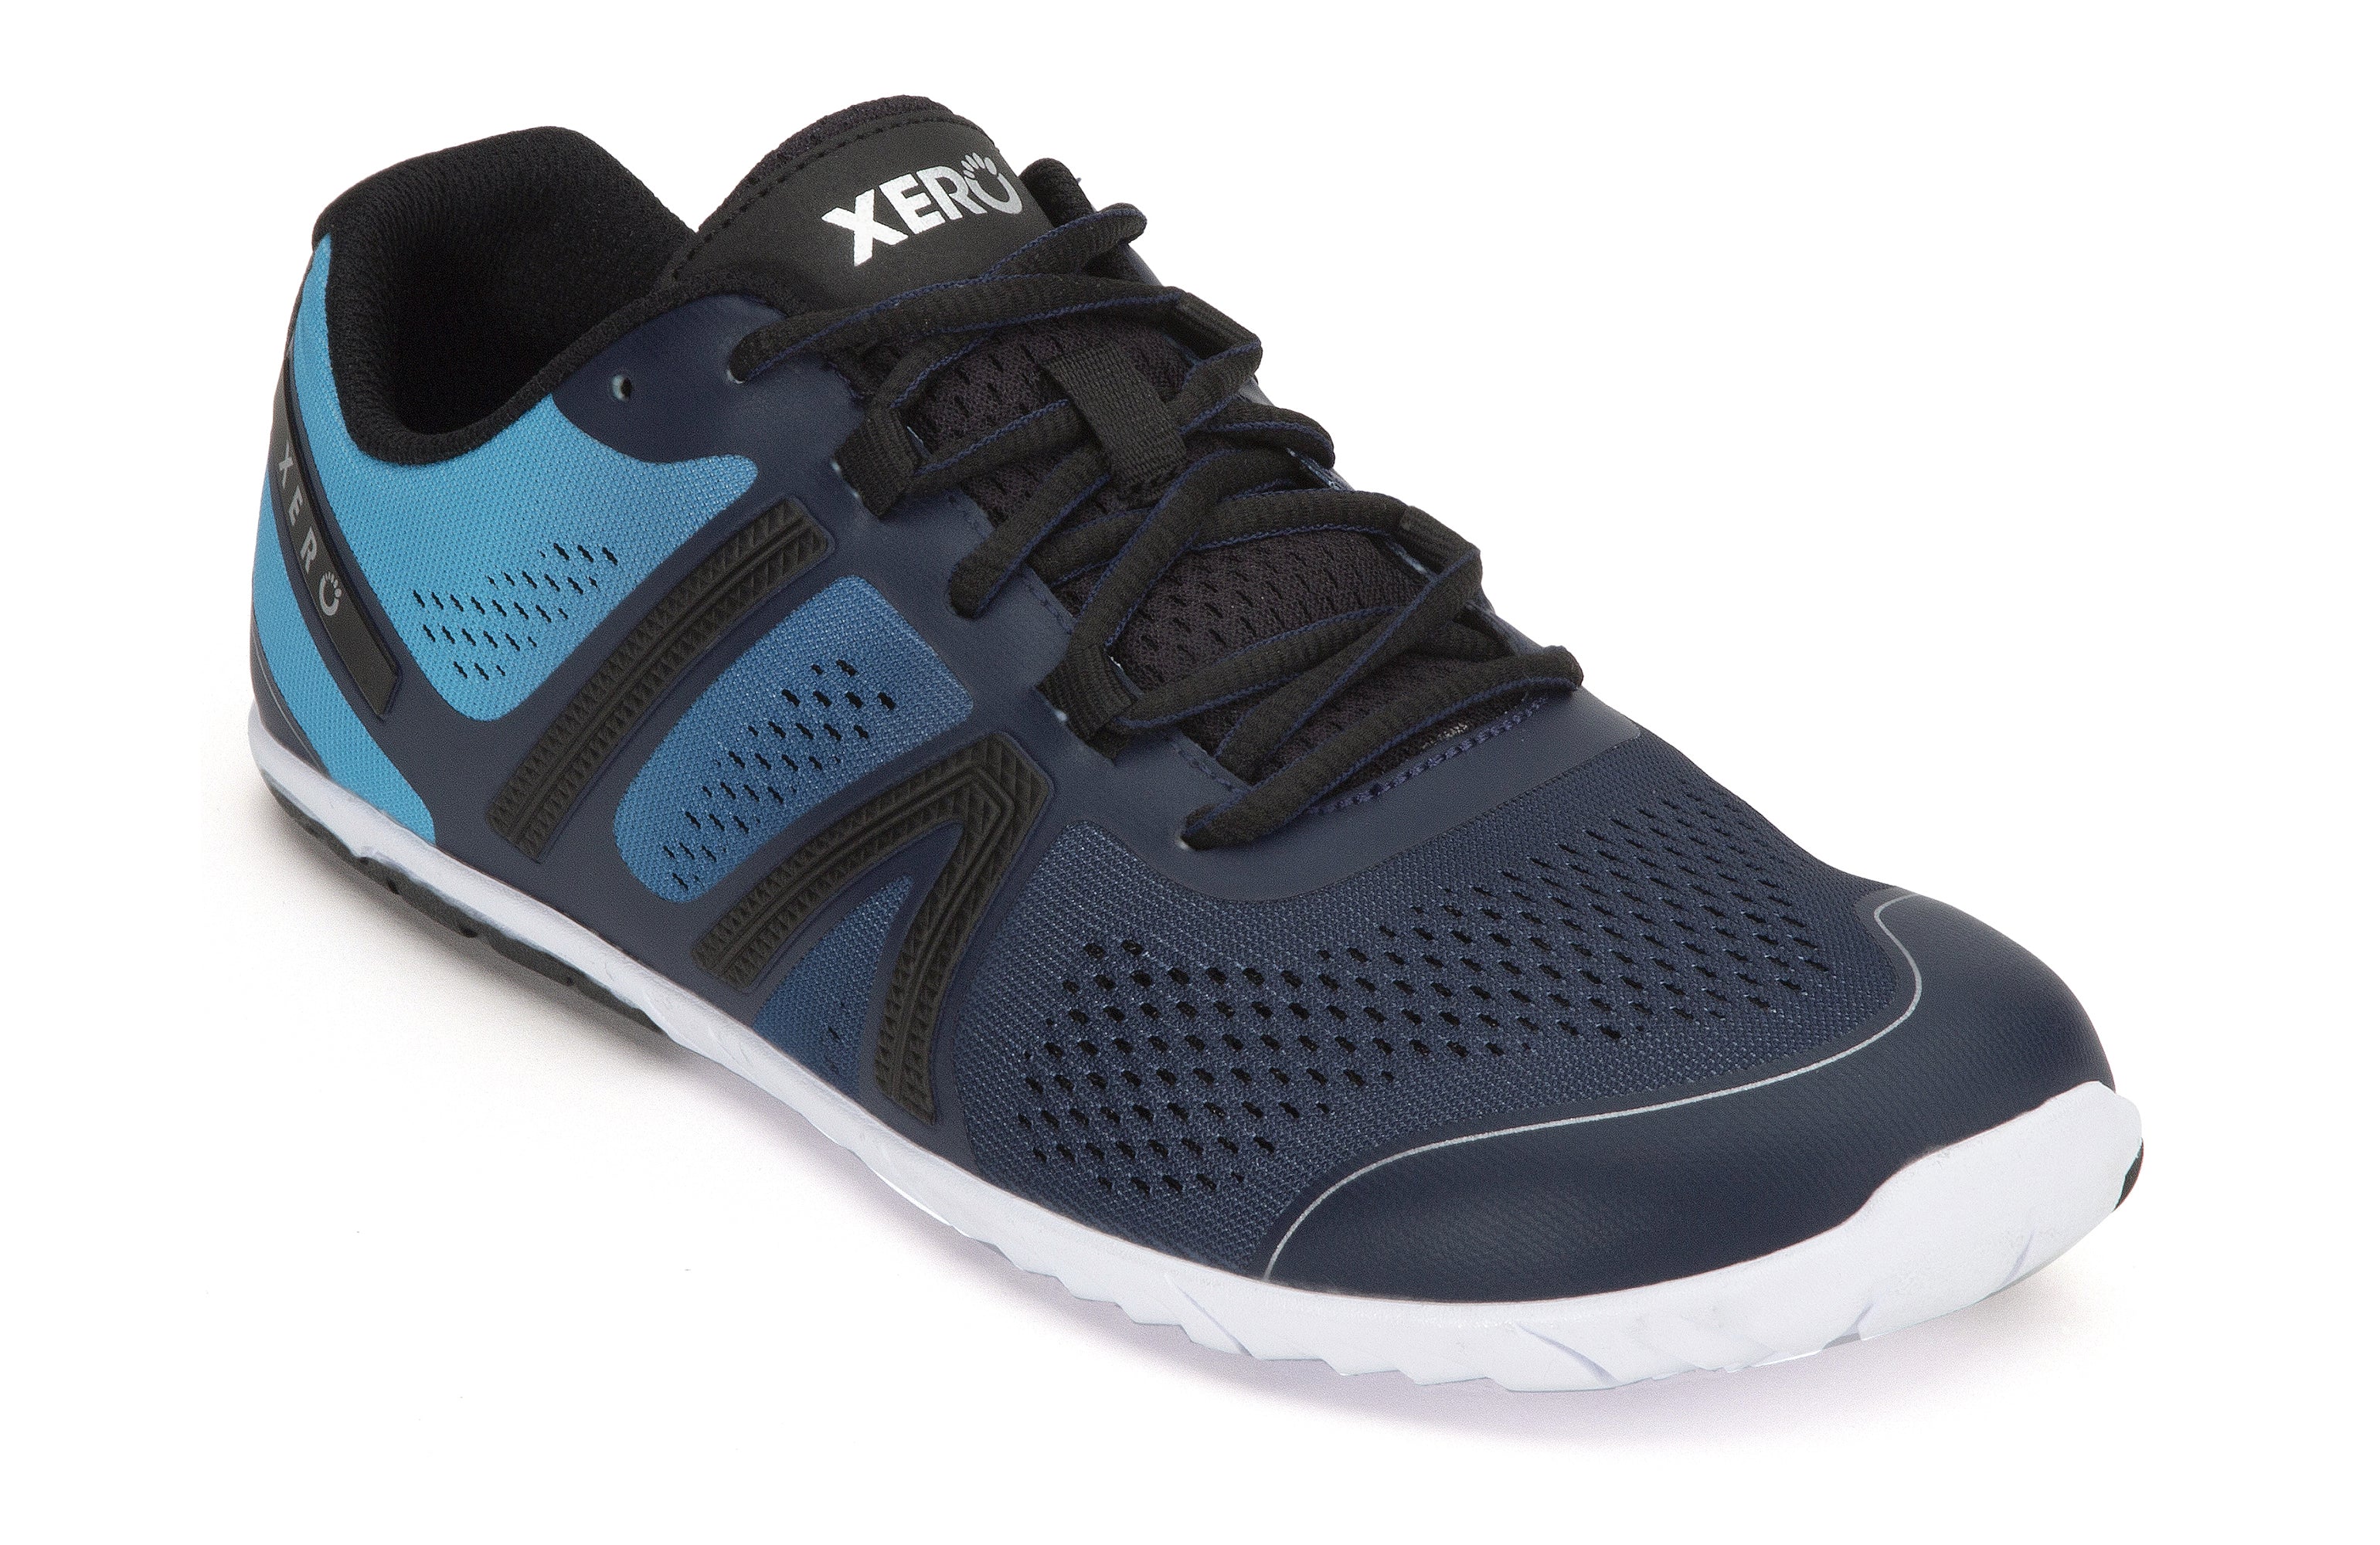 Xero Shoes HFS Mens barfods træningssko til mænd i farven navy/scuba blue, vinklet